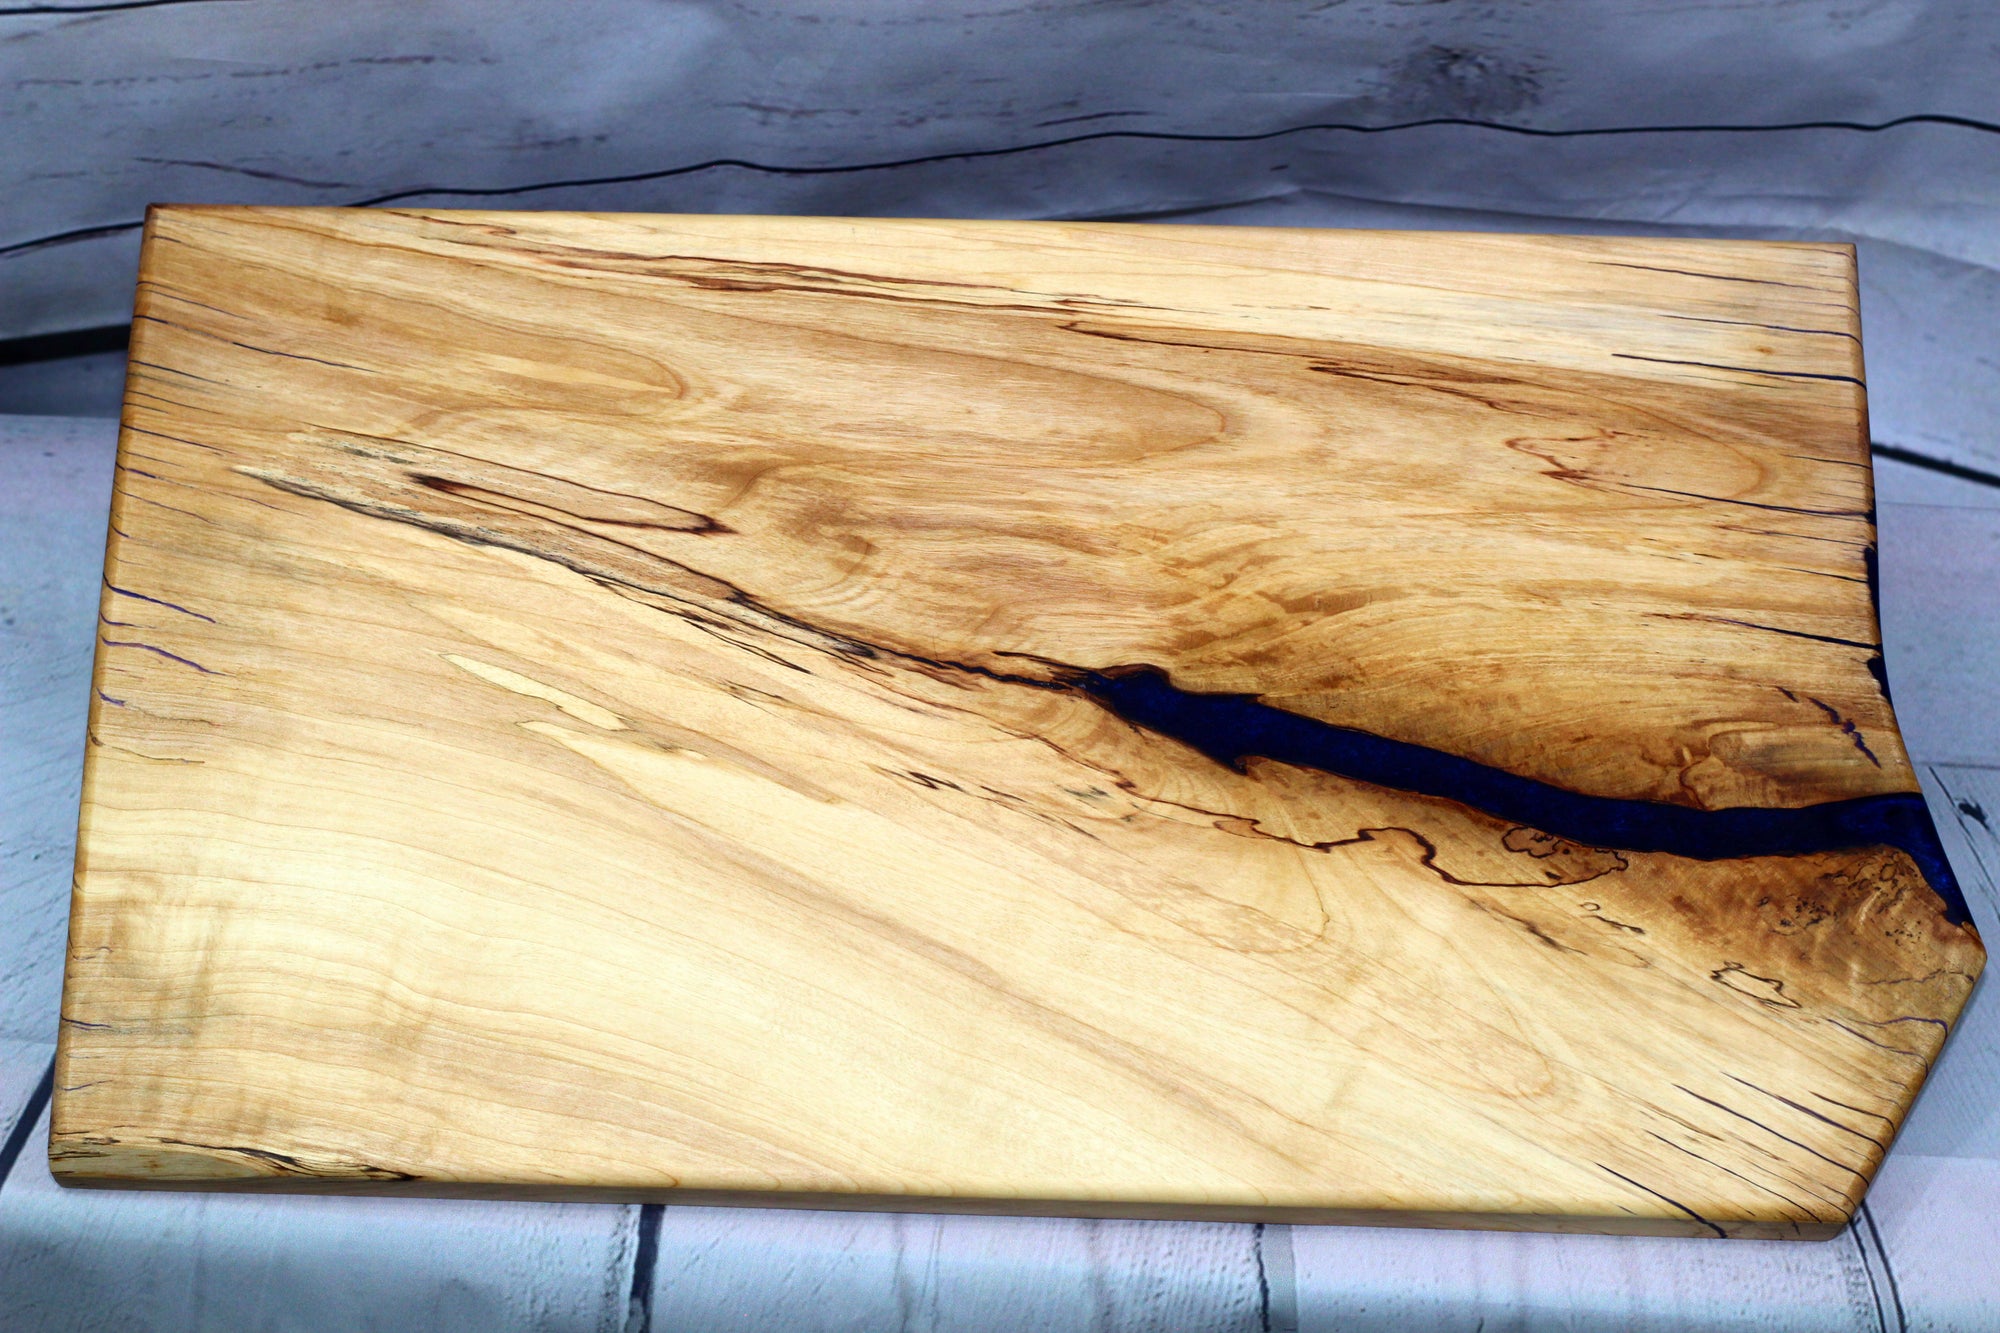 Charcuterie board (live edge birch with purple epoxy)